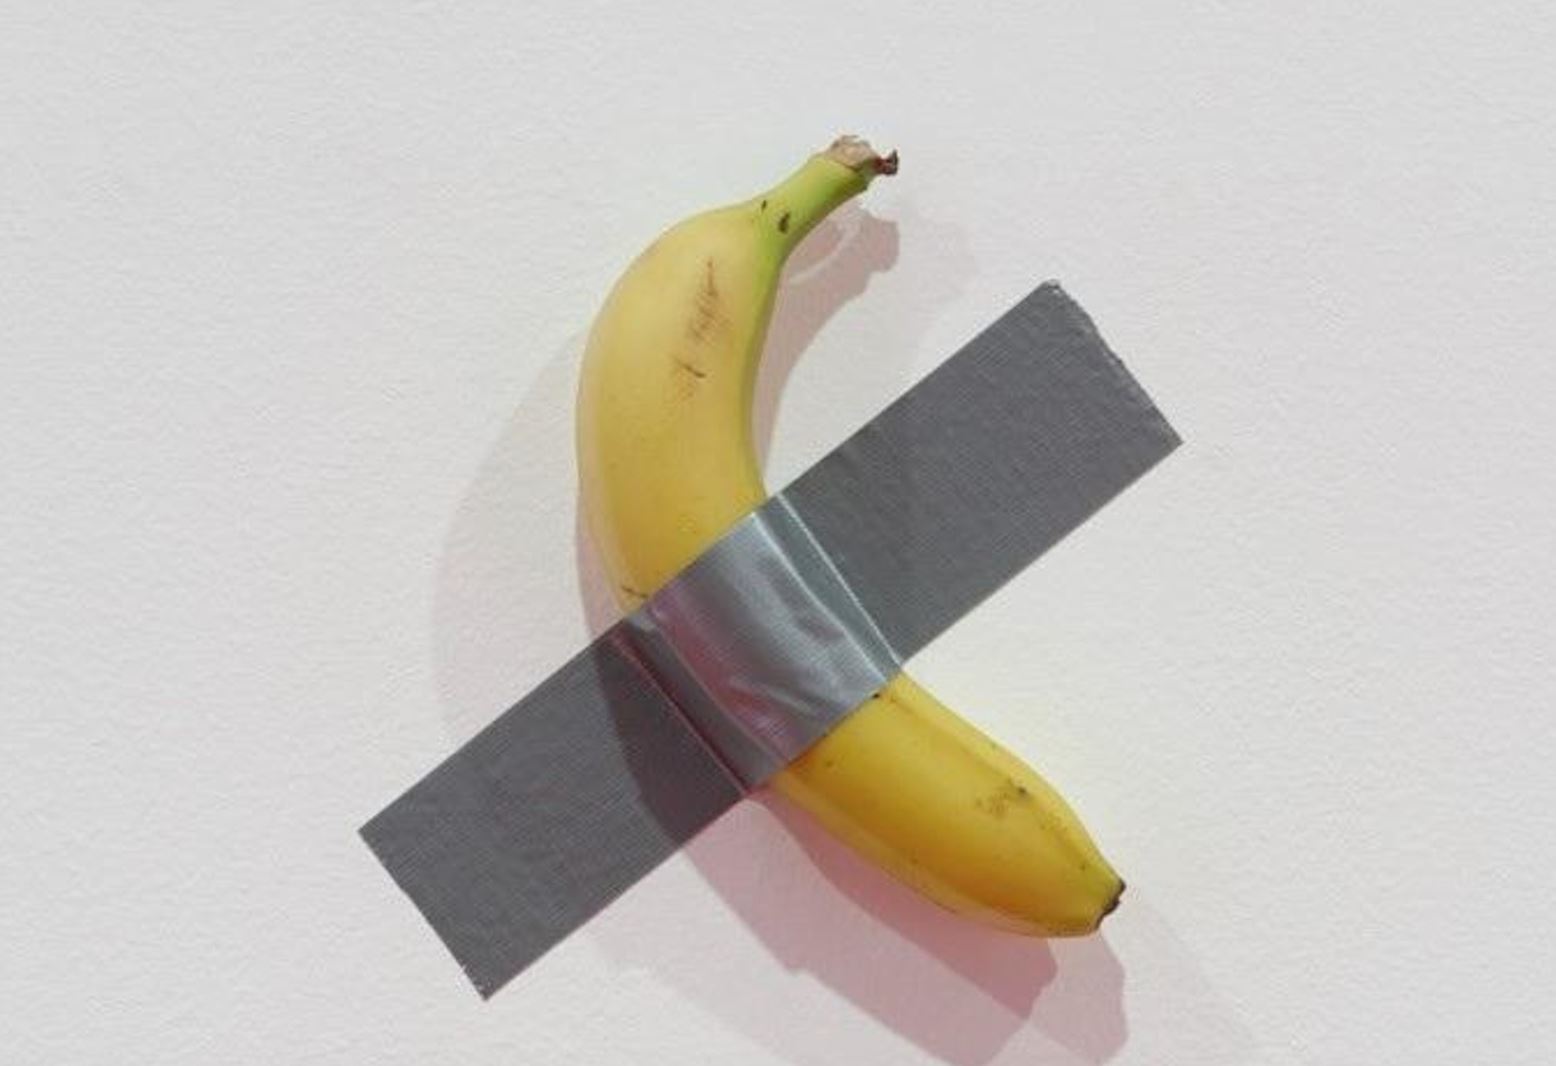 68万「香蕉」艺术品遭吃光！南韩大学生现场完食蕉皮贴回墙　辩独家爆料资讯"